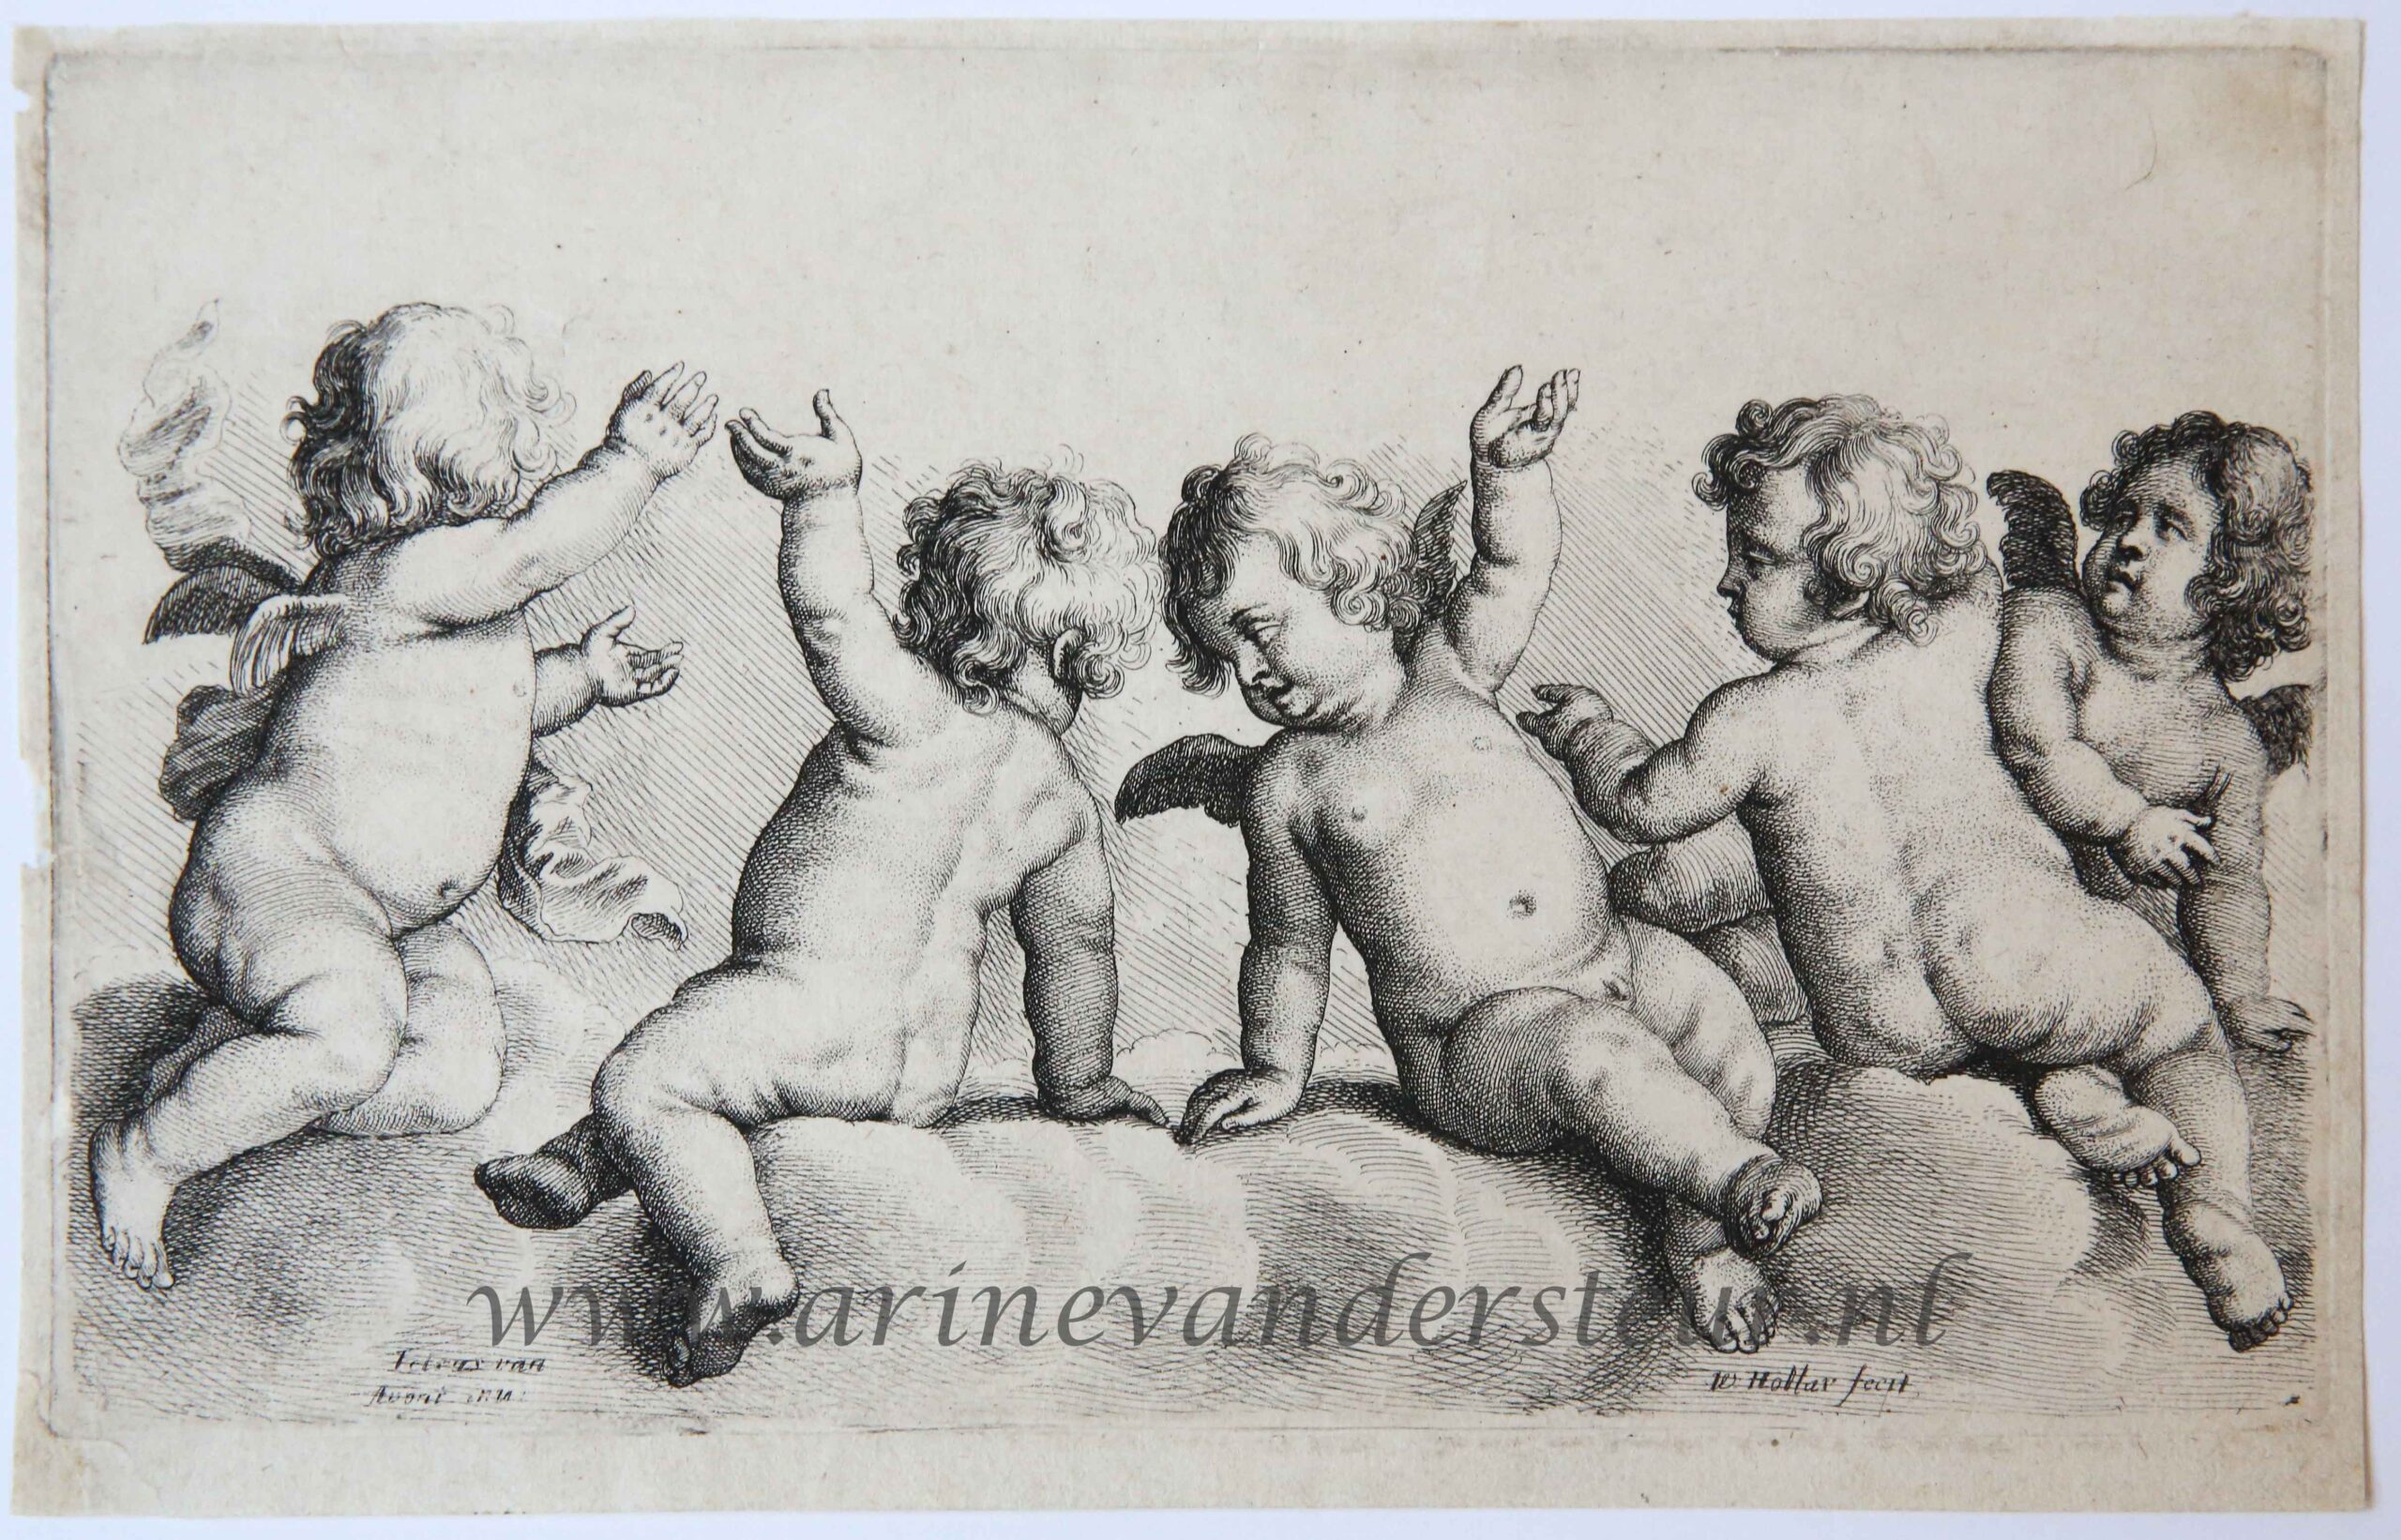 [Antique print, etching] Three cherubs and two boys on clouds/Twee cherubijntjes en twee jongetjes op wolken, ca 1645.